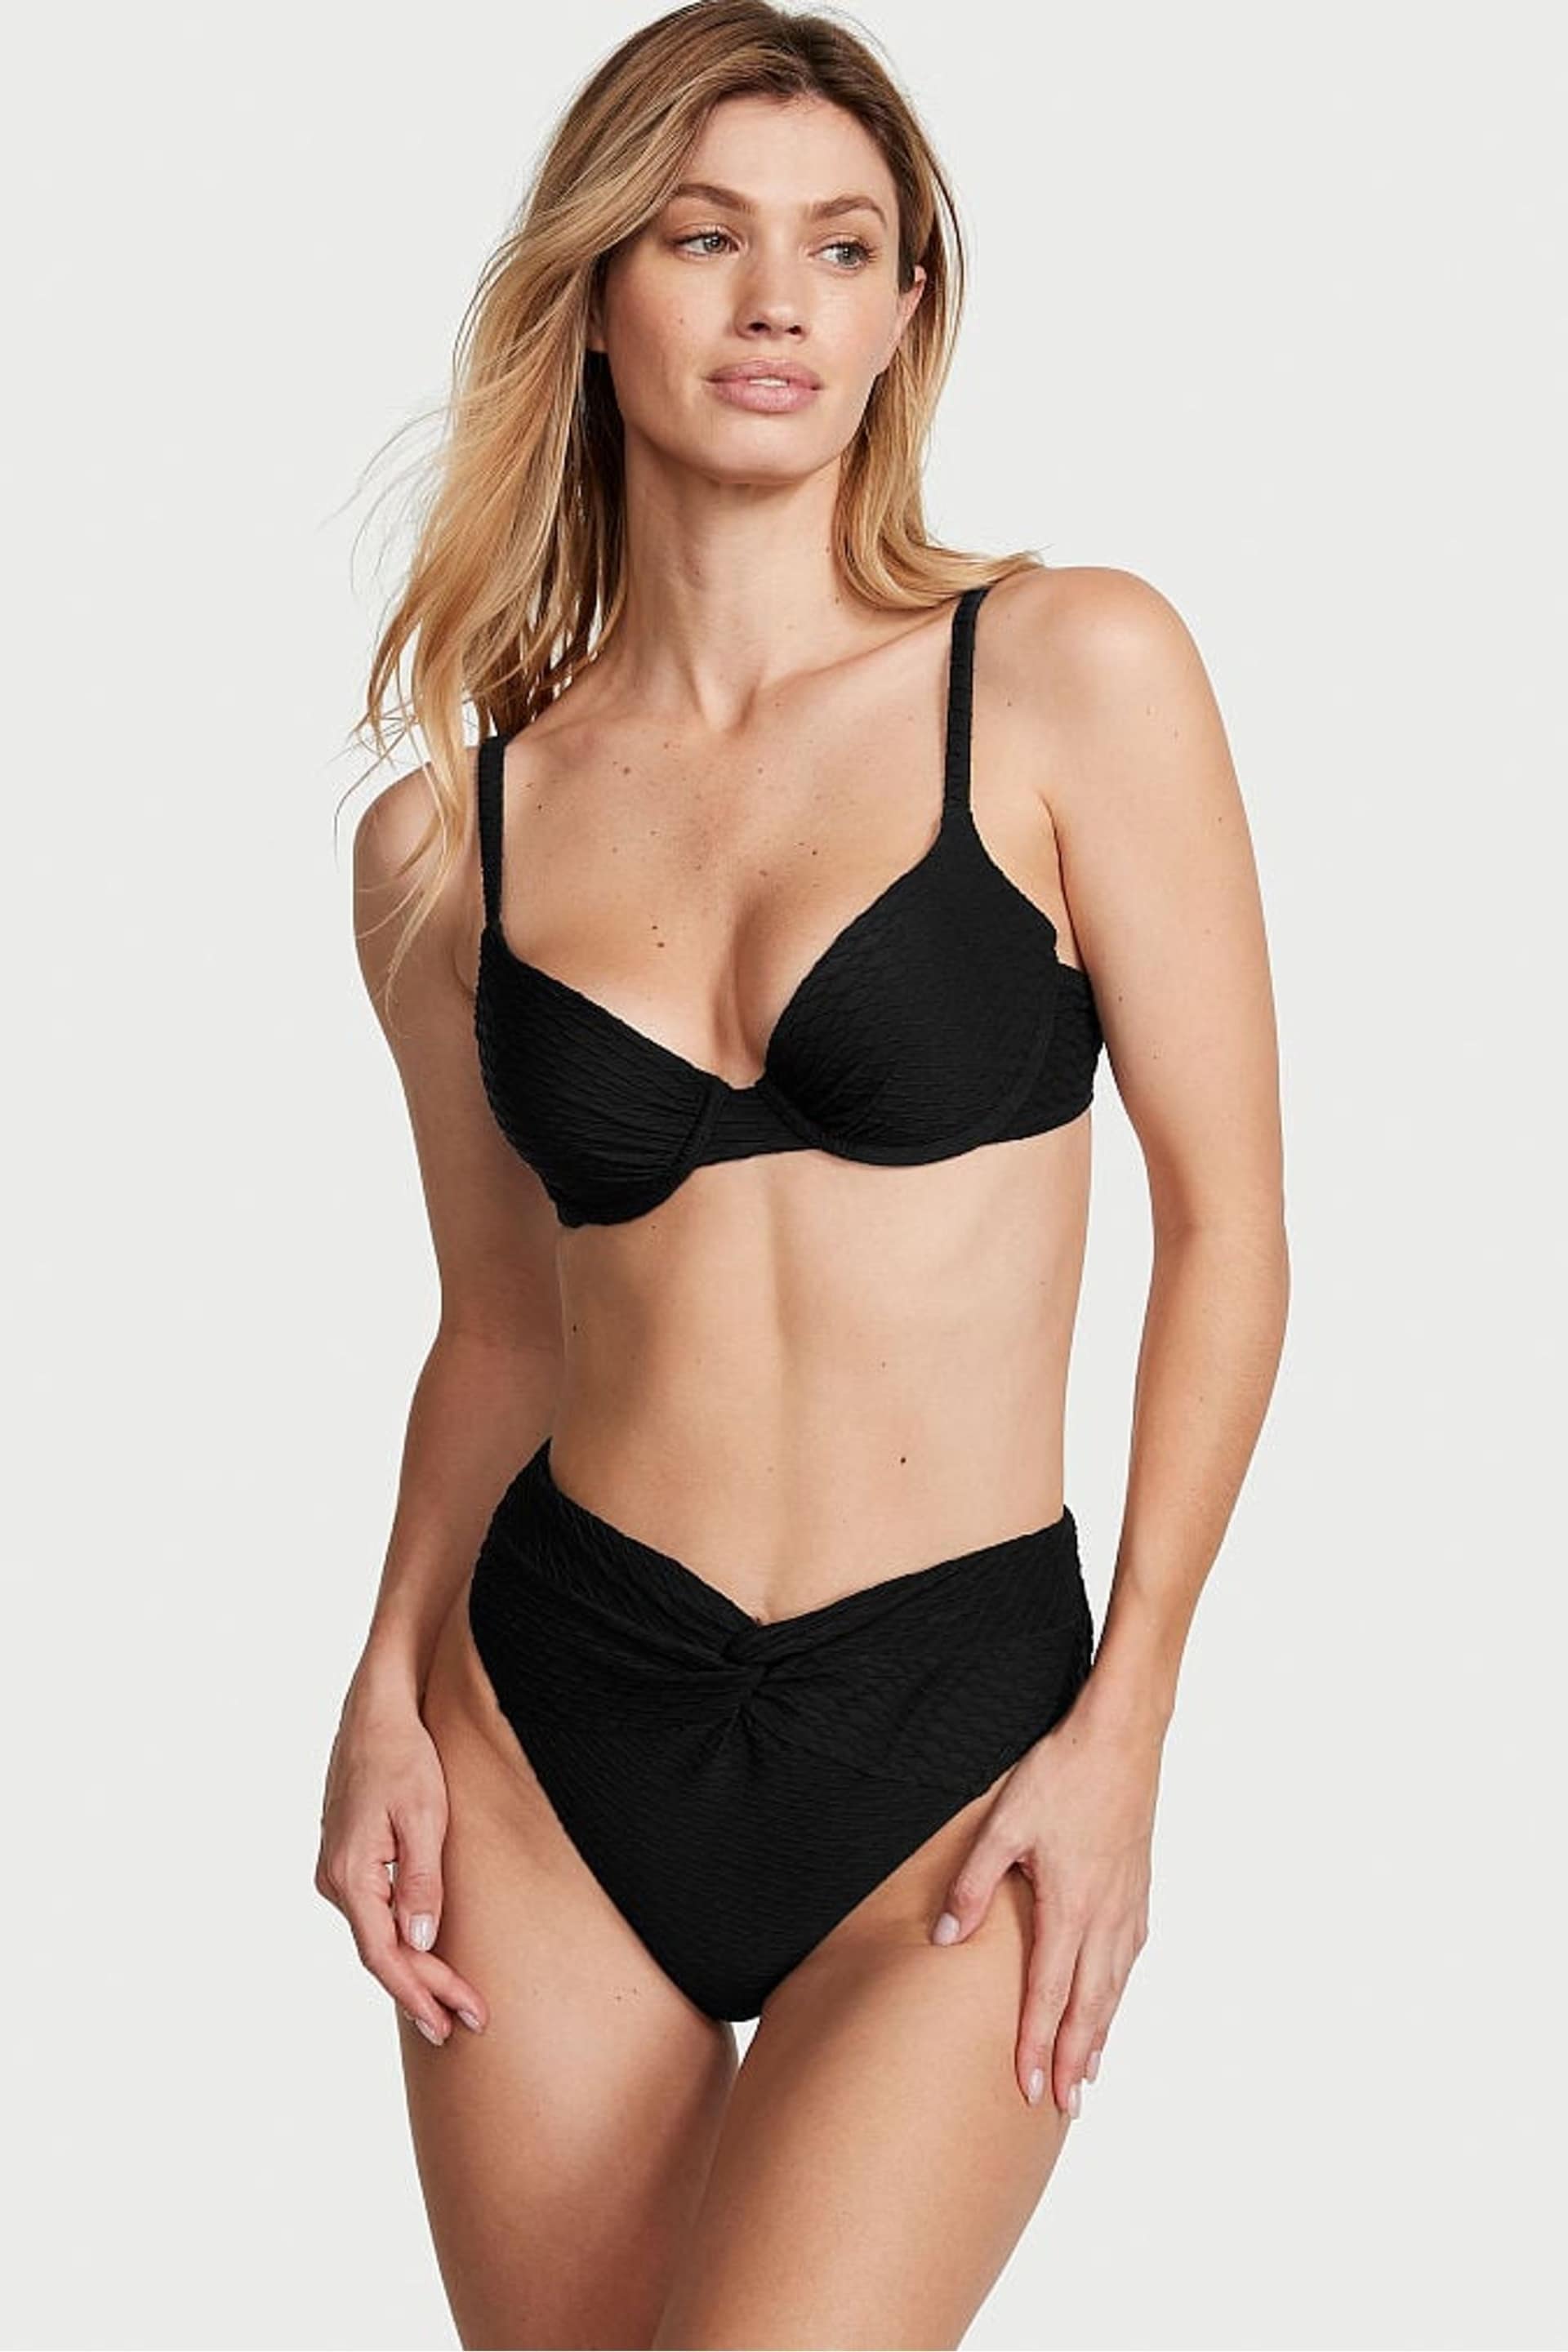 Victoria's Secret Black Fishnet High Leg Swim Bikini Bottom - Image 1 of 4